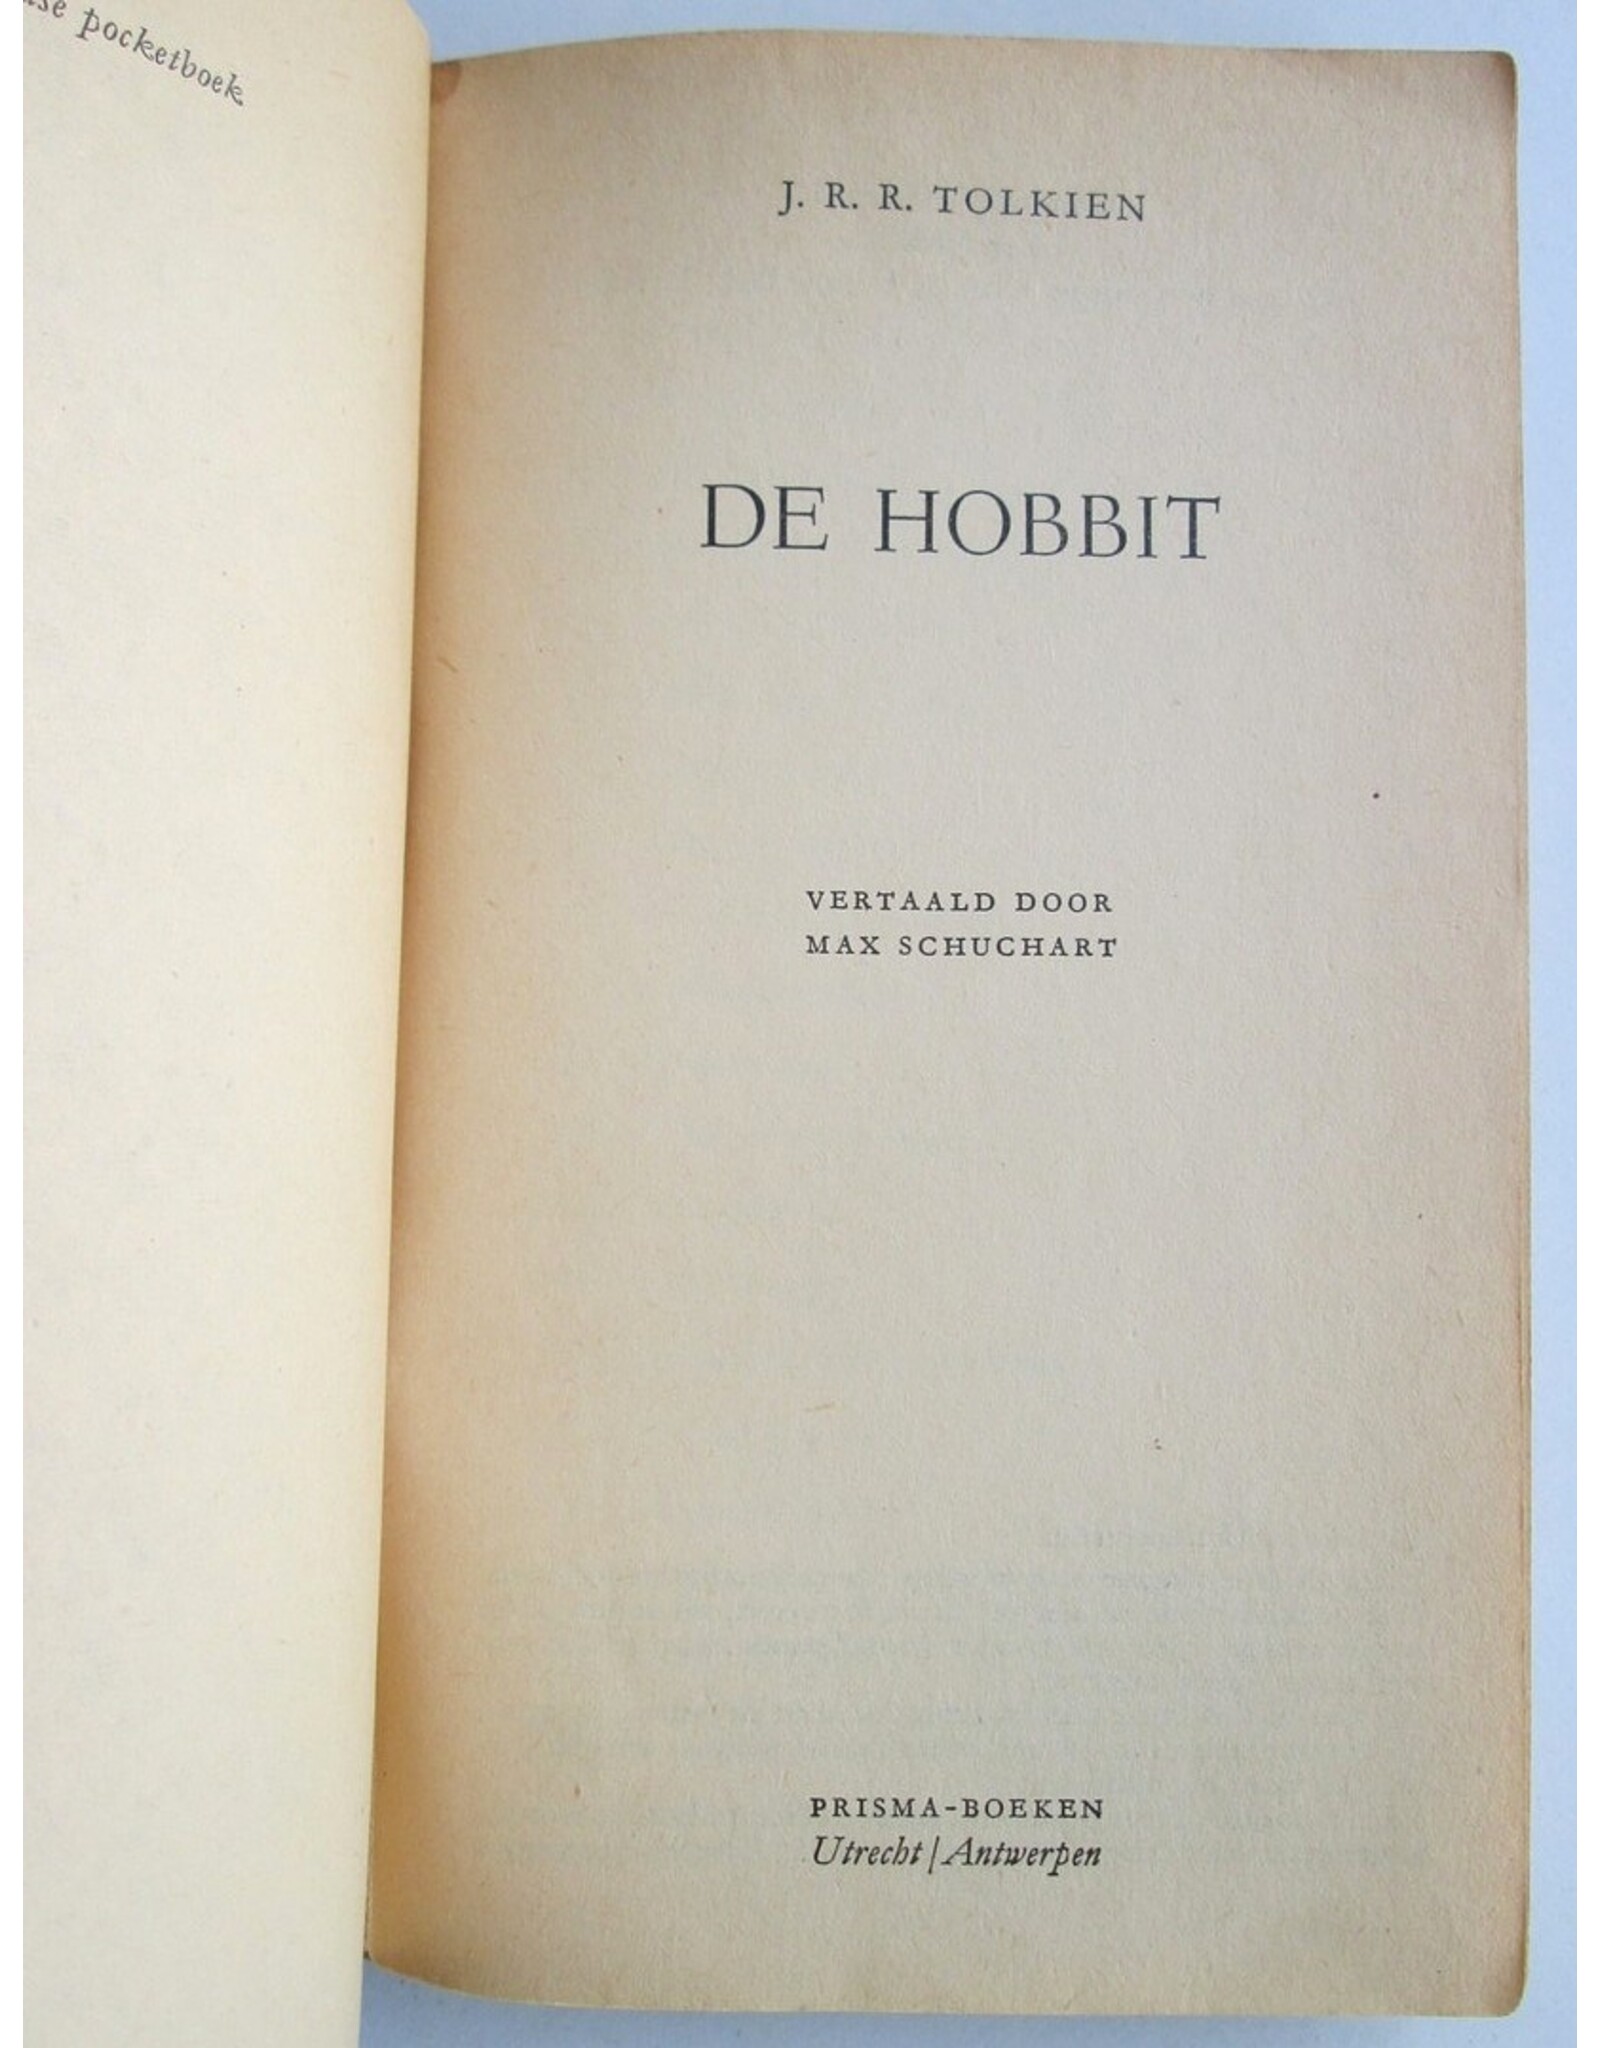 J.R.R. Tolkien - De hobbit. Vertaald door Max Schuchart